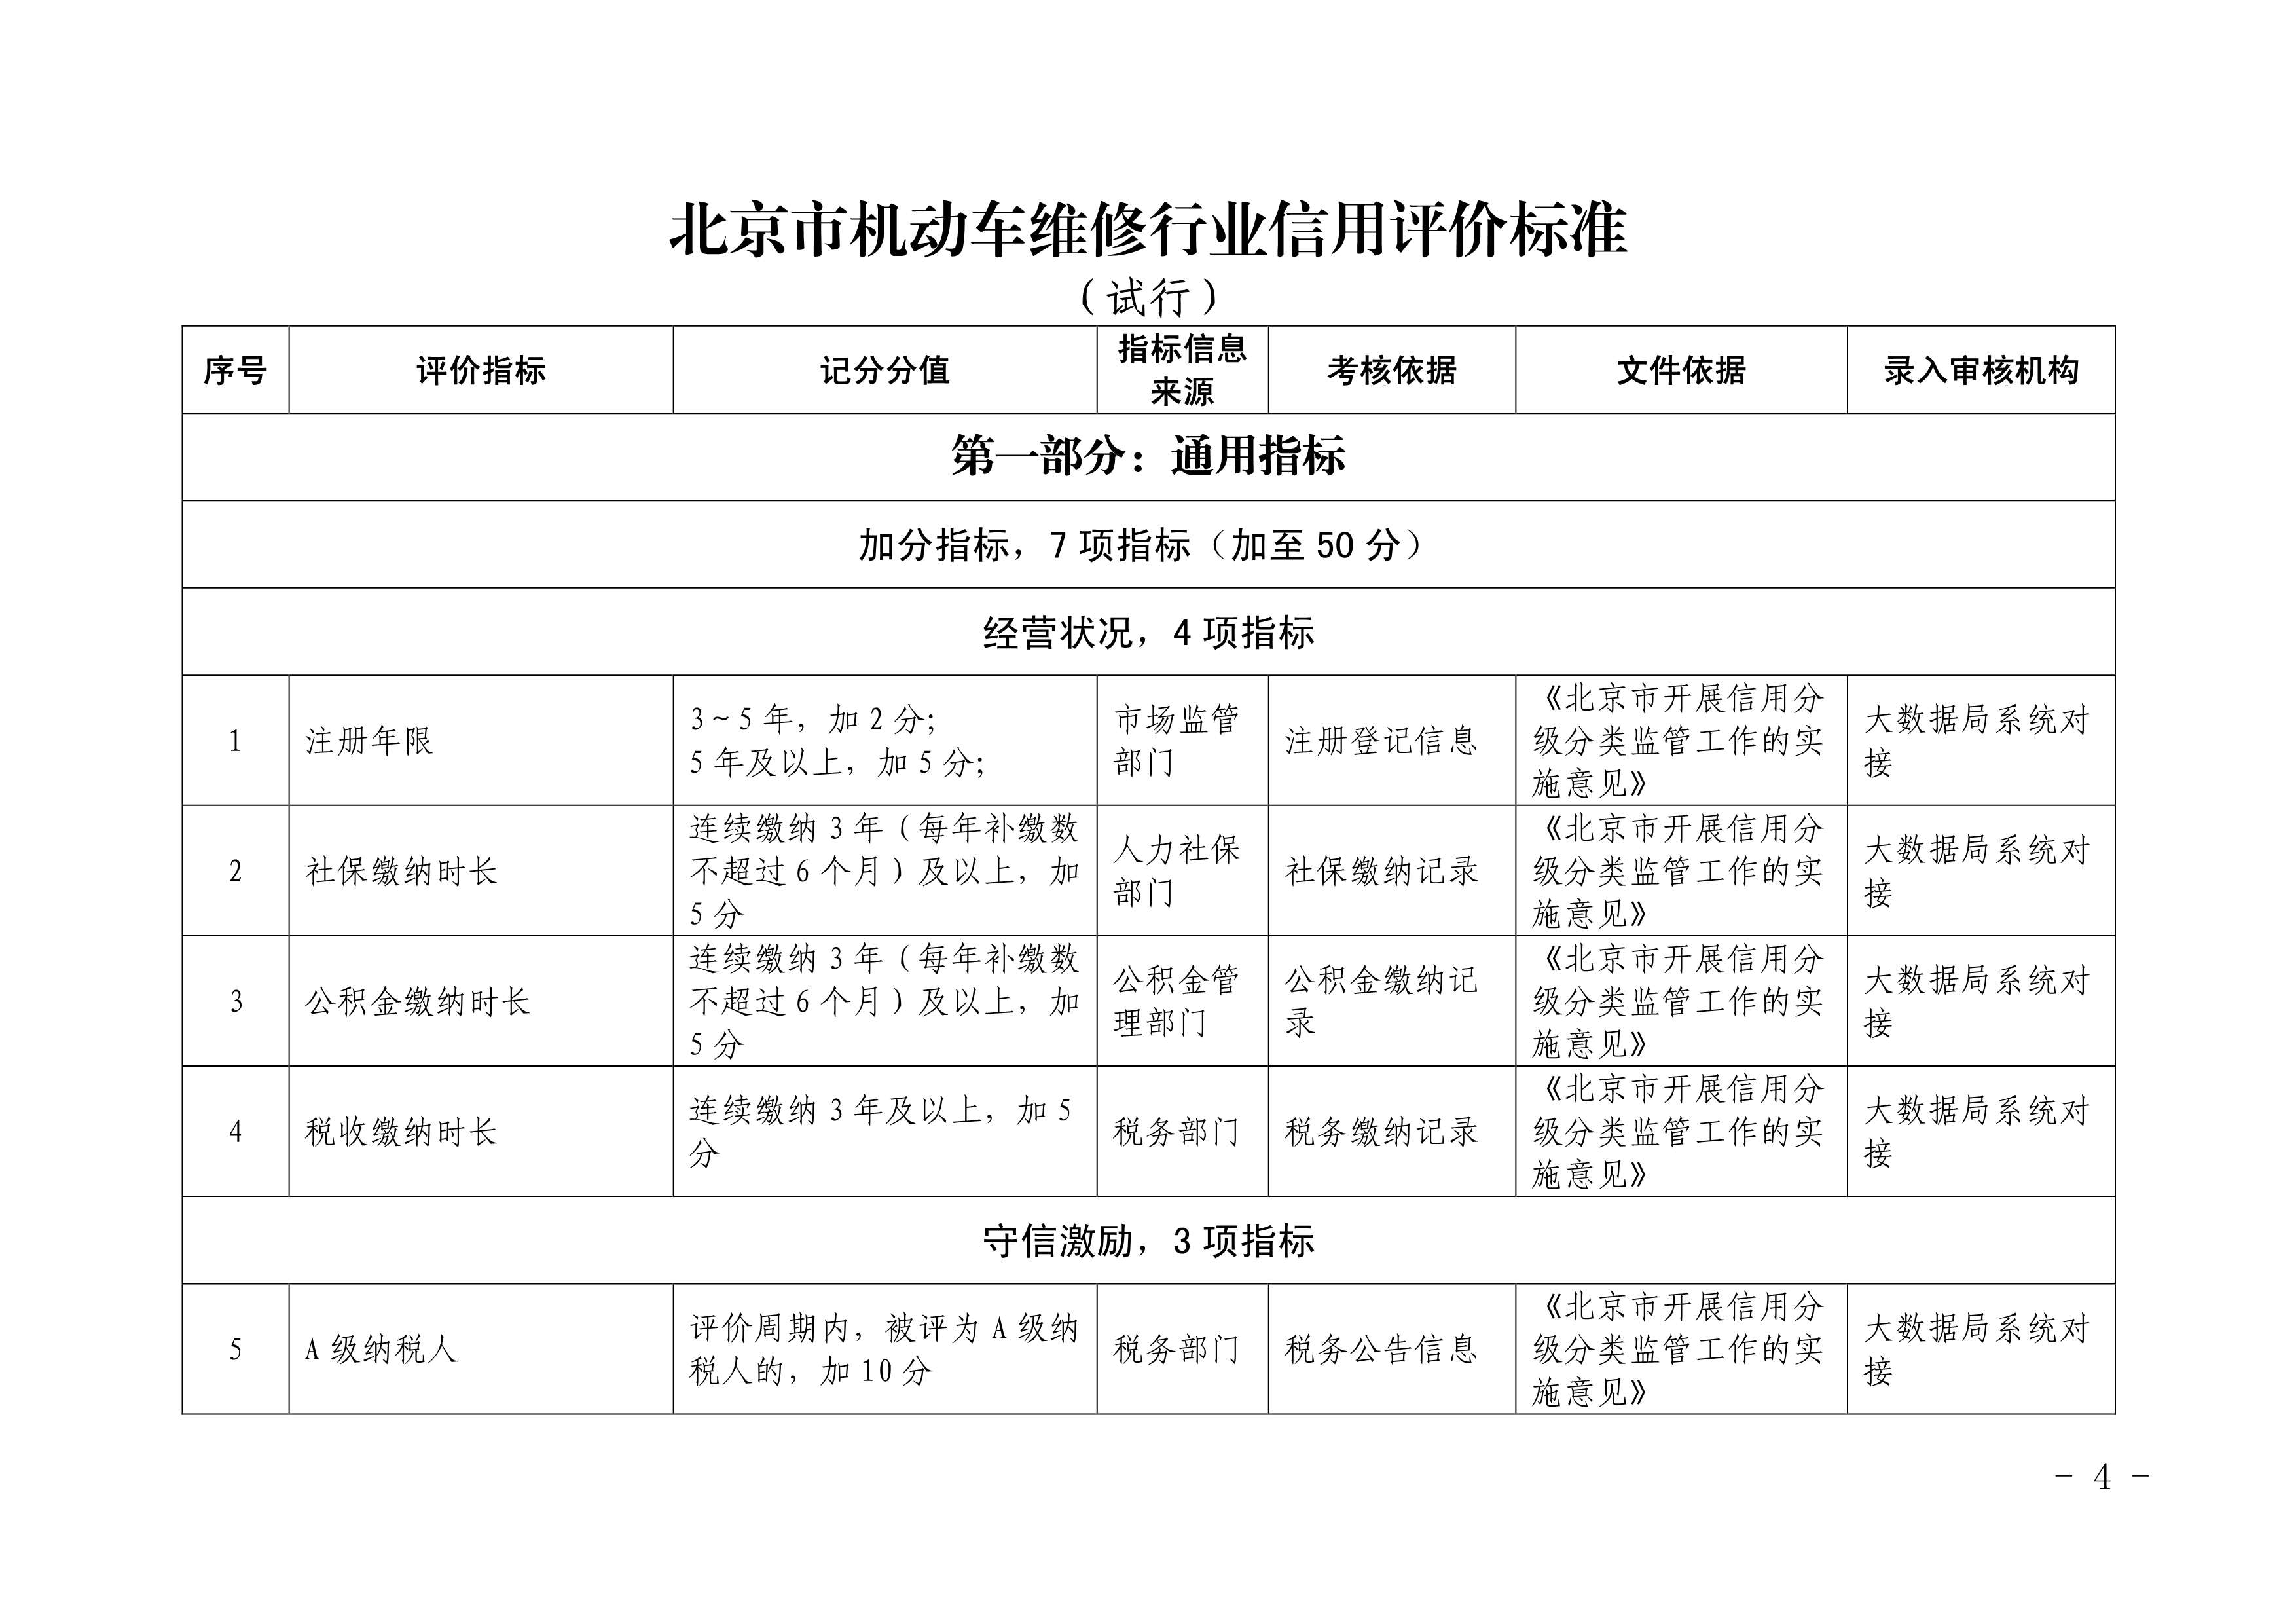 北京市交通委员会关于印发《北京市机动车 维修行业信用评价标准（试行）》的通知(图3)